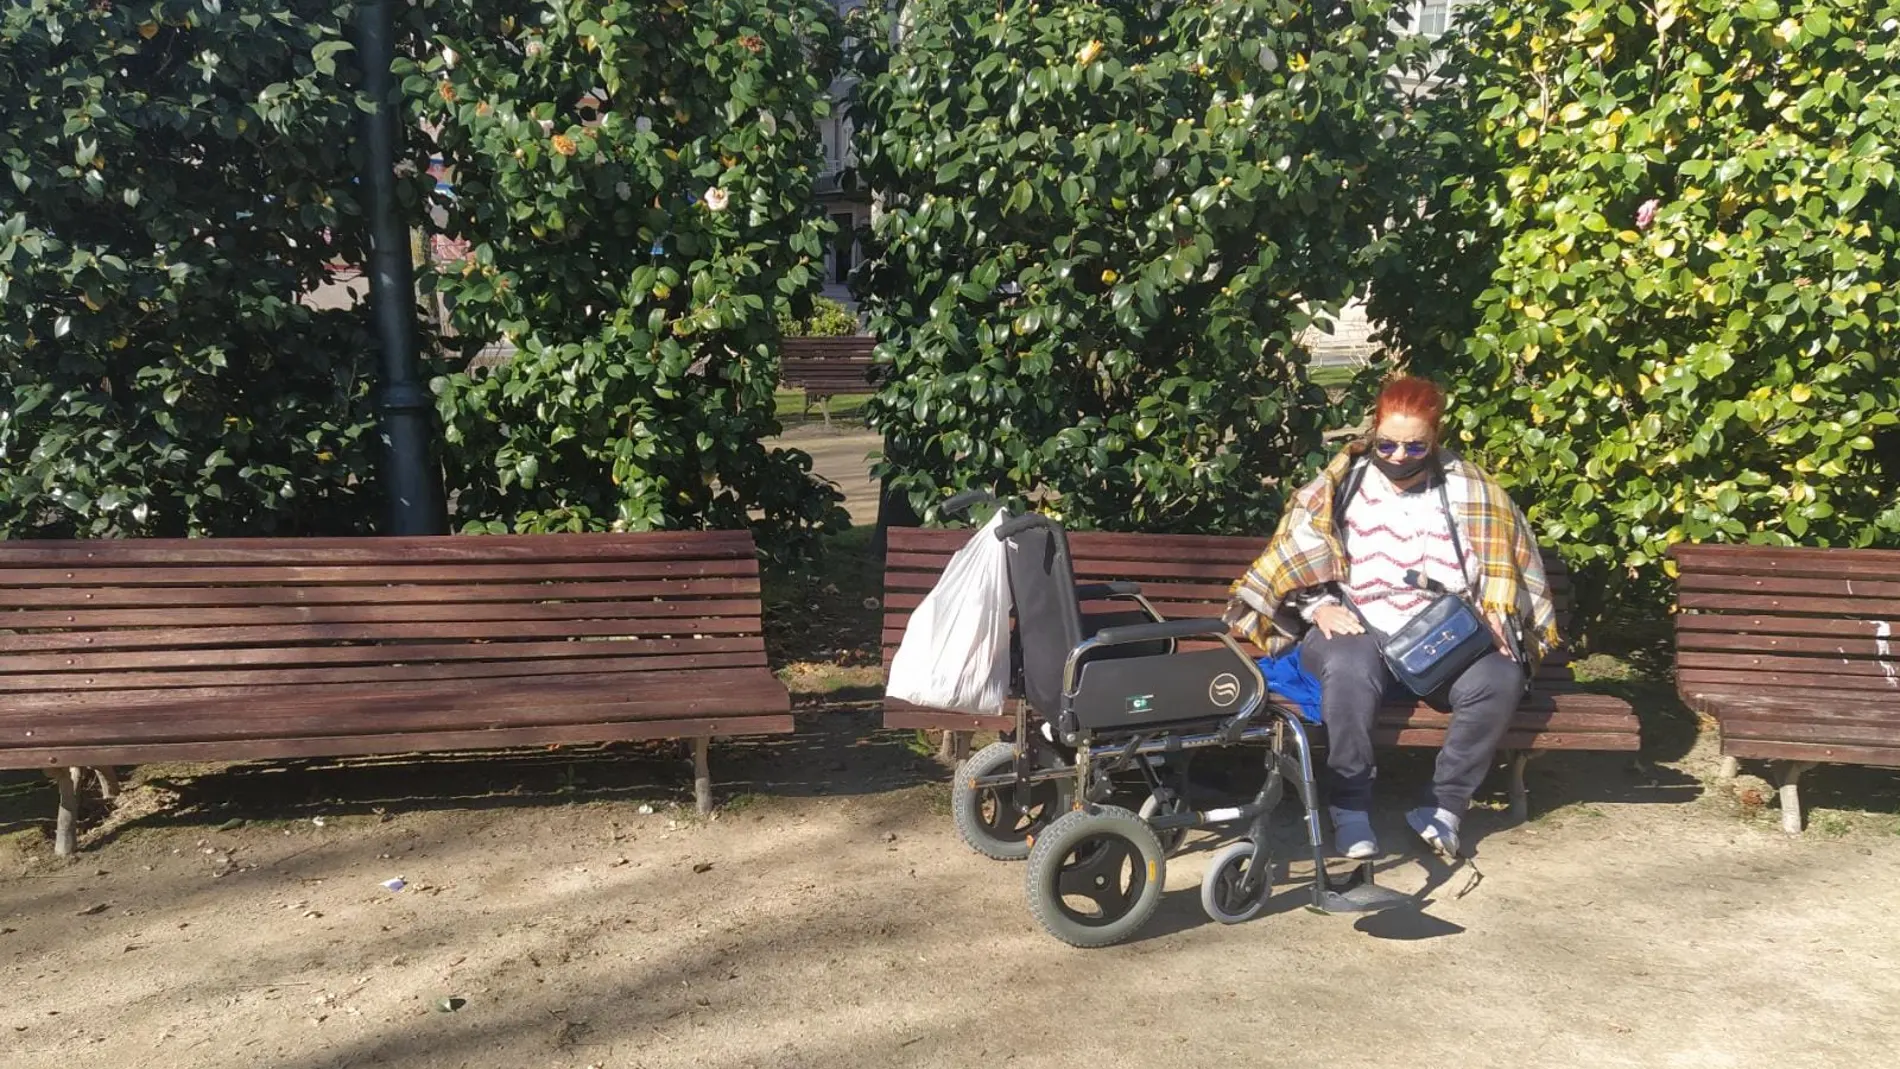 Roban una silla de ruedas a una mujer en un parque de Pontevedra